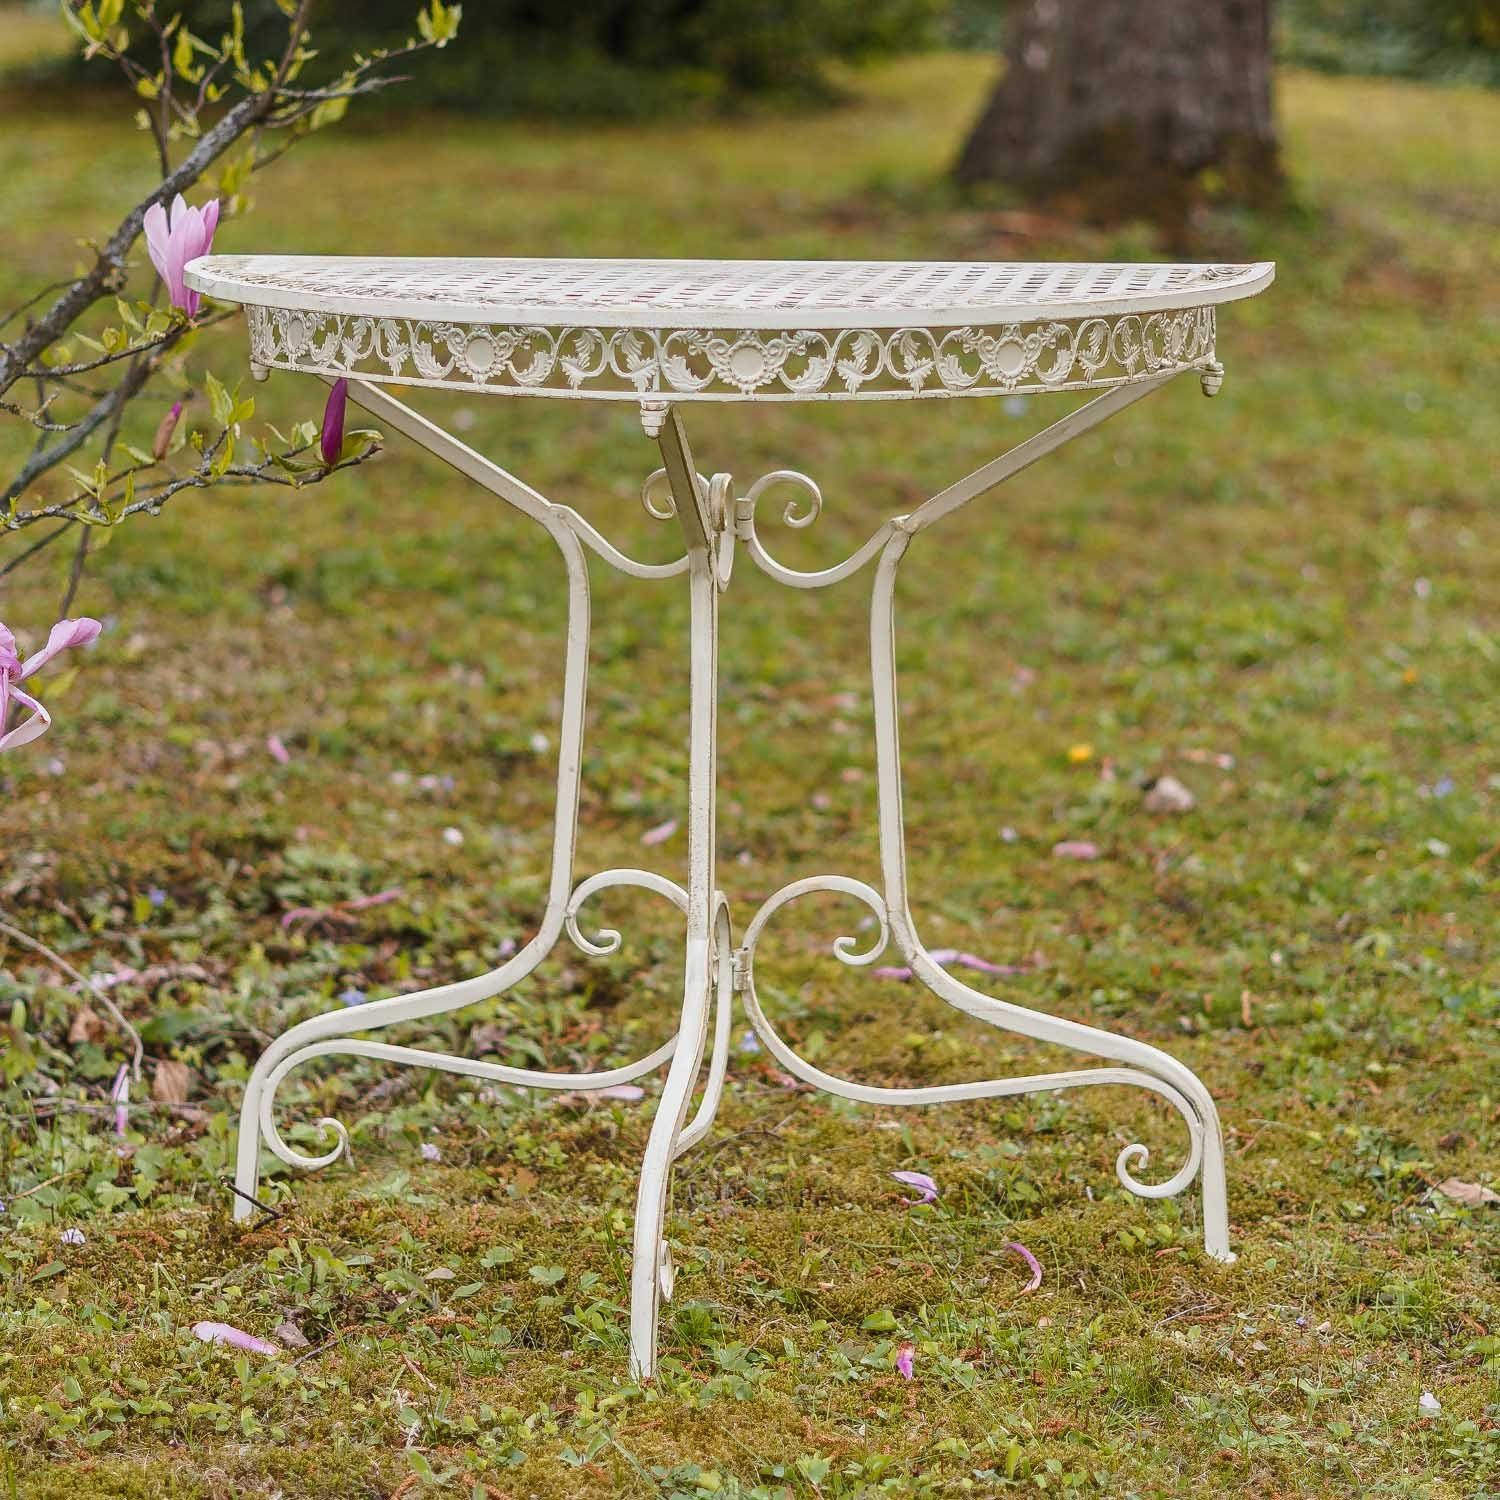 Ko Gartentisch Gartentisch halbrund Balkontisch weiss Tisch Aubaho Eisen Antik-Stil creme